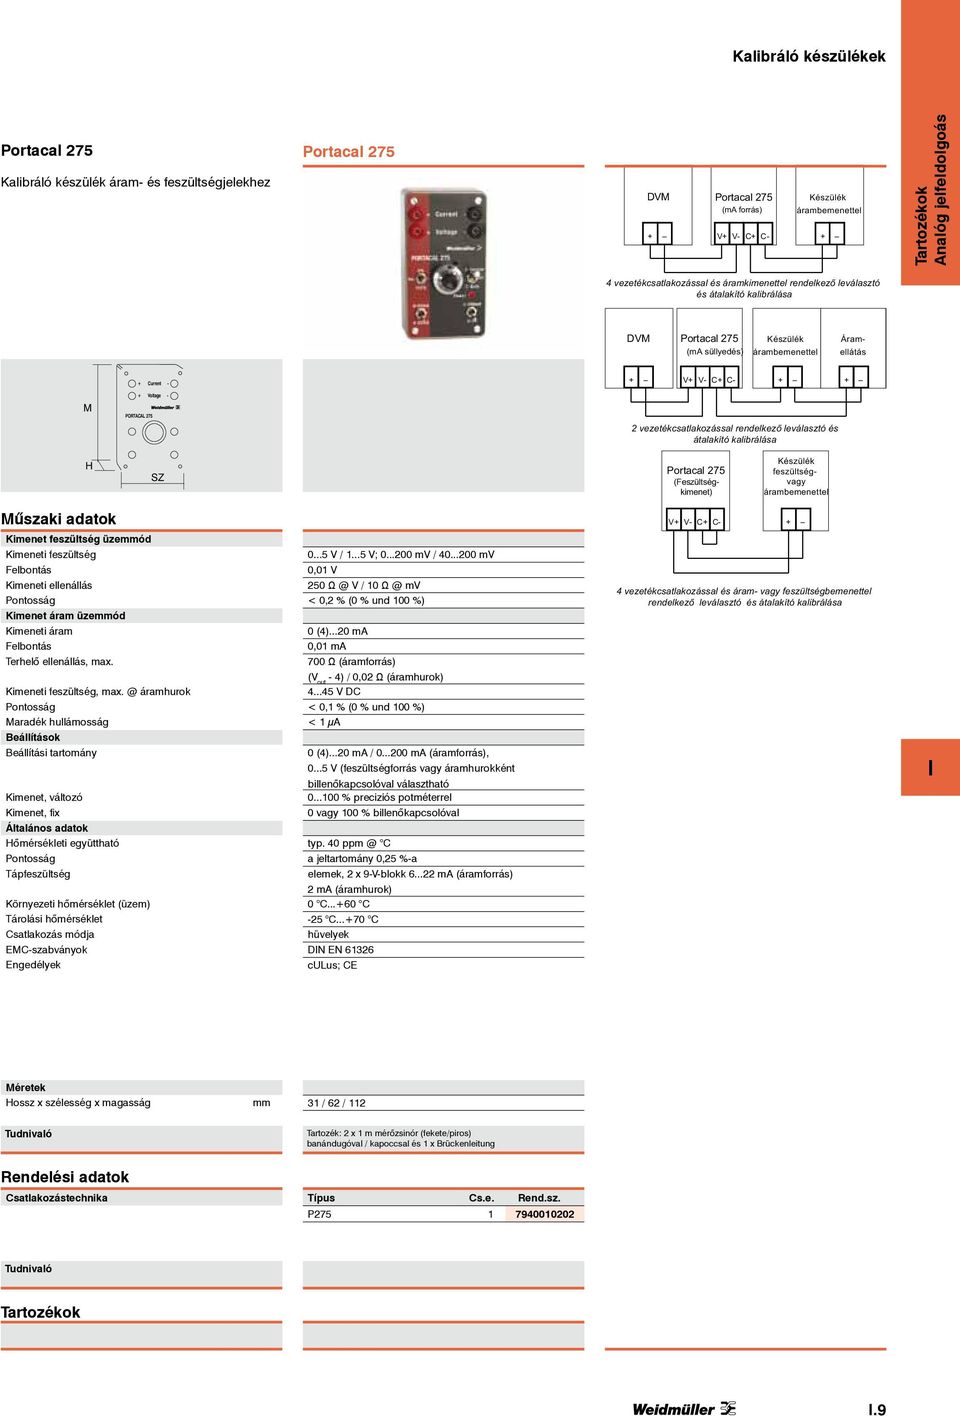 PORTACAL 275 2 vezetékcsatlakozással rendelkező leválasztó és átalakító kalibrálása H SZ Portacal 275 (Feszültségkimenet) Készülék feszültségvagy árambemenettel Műszaki adatok V+ V- C+ C- + Kimenet